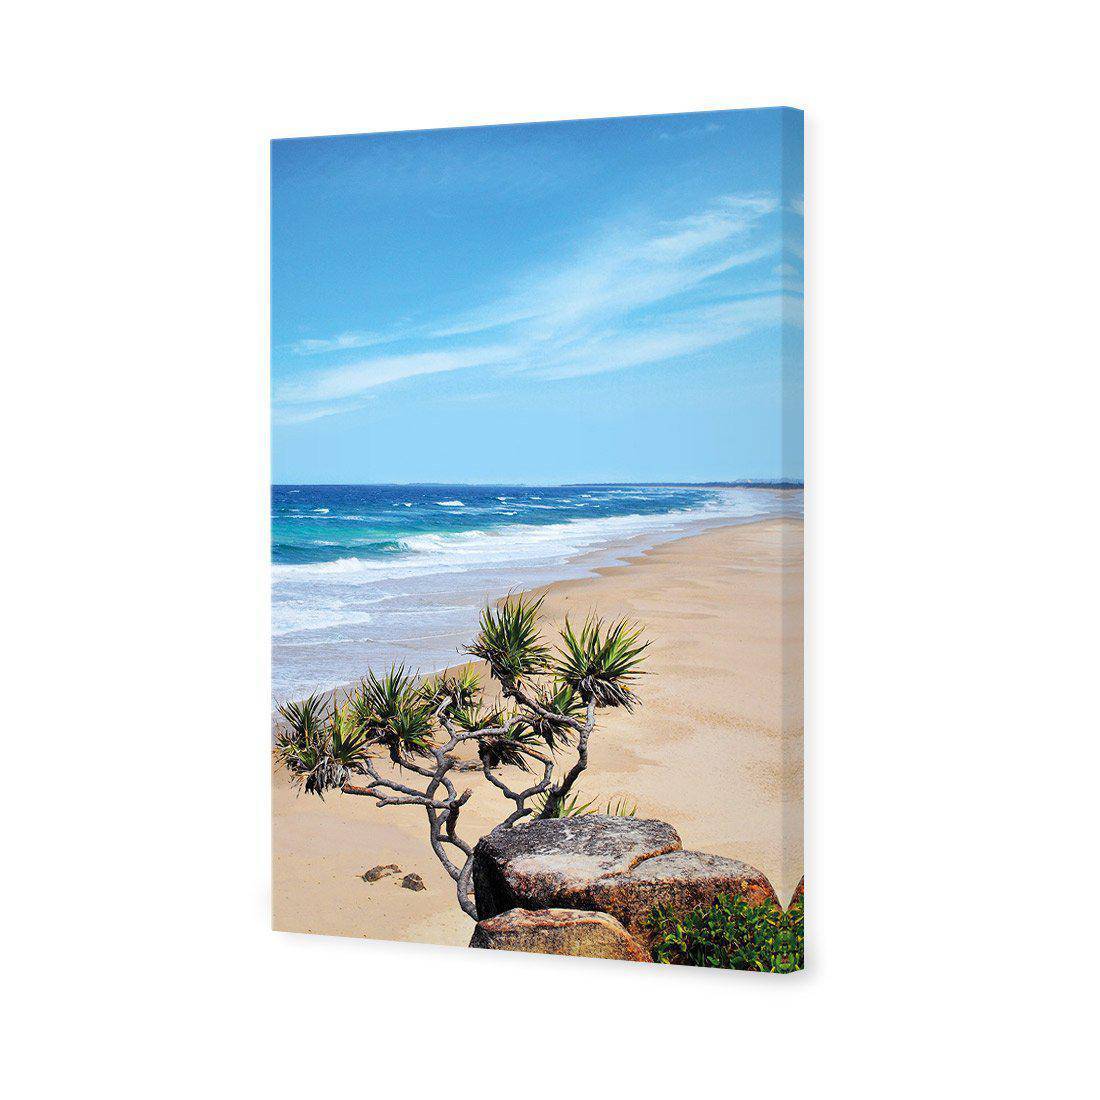 Coolum Beach Canvas Art-Canvas-Wall Art Designs-45x30cm-Canvas - No Frame-Wall Art Designs